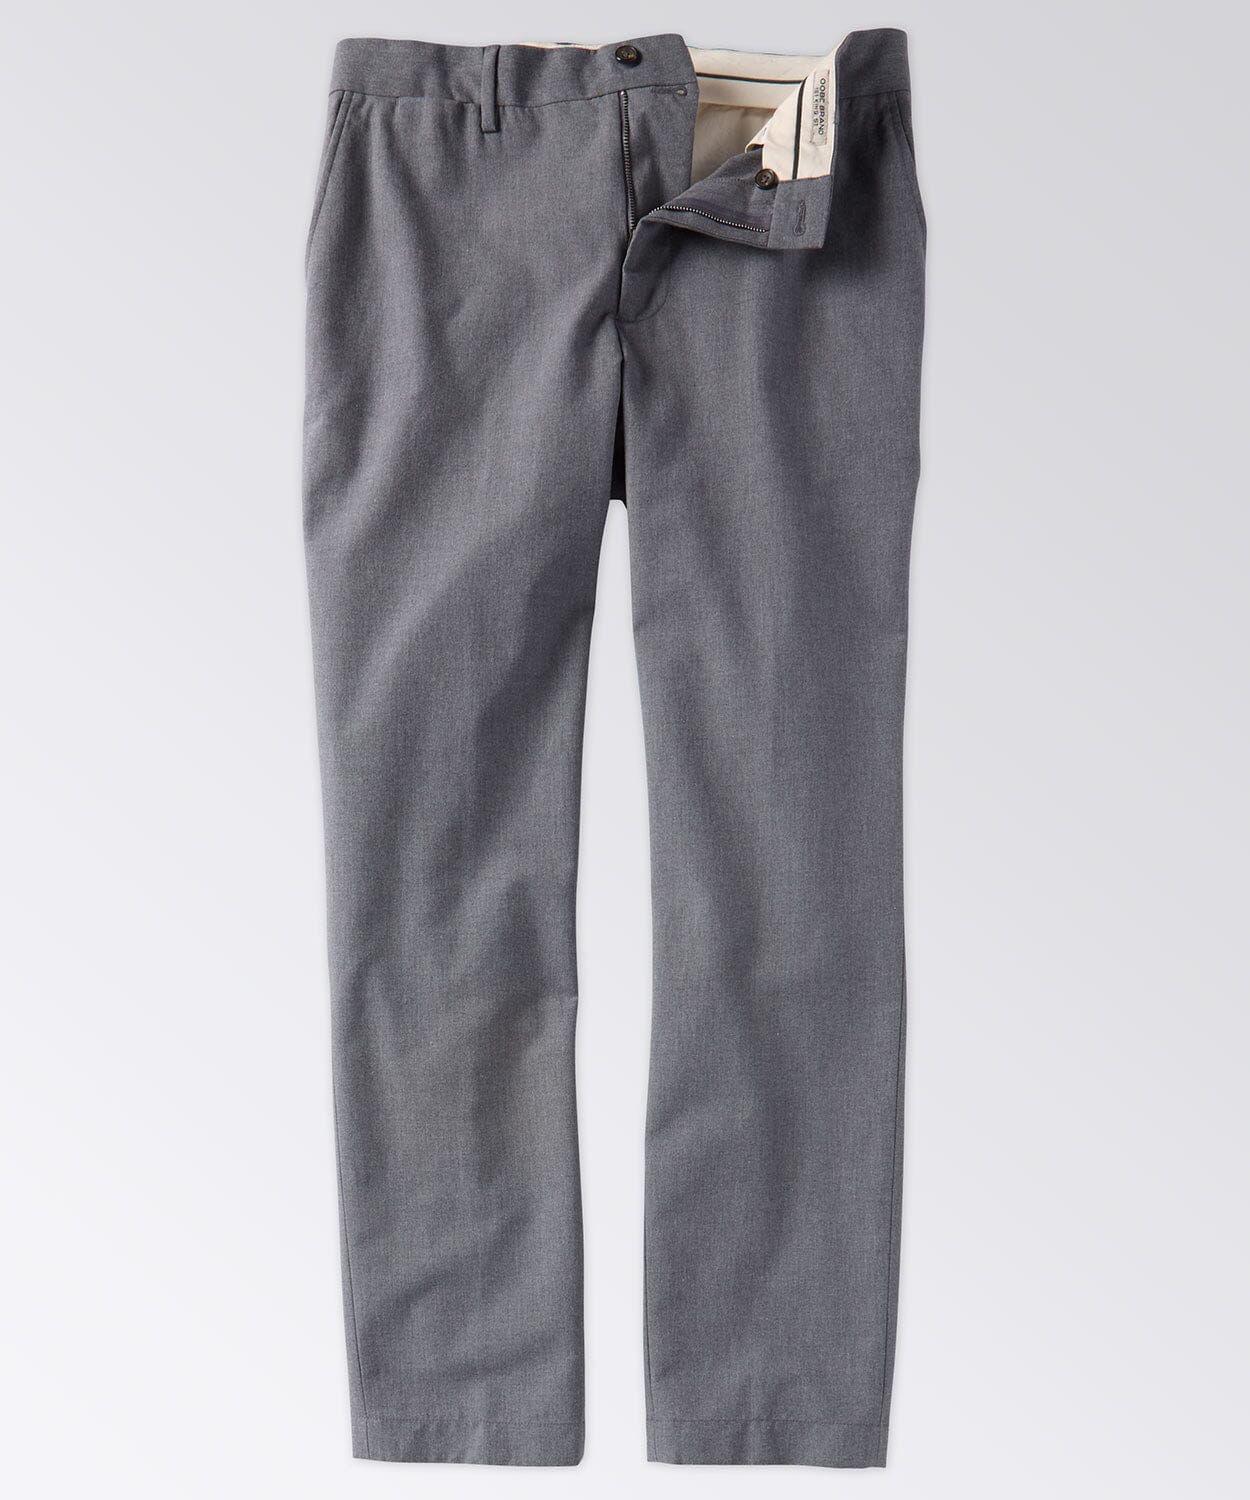 Batten Pant Pants OOBE BRAND Andover Grey 32" 30"